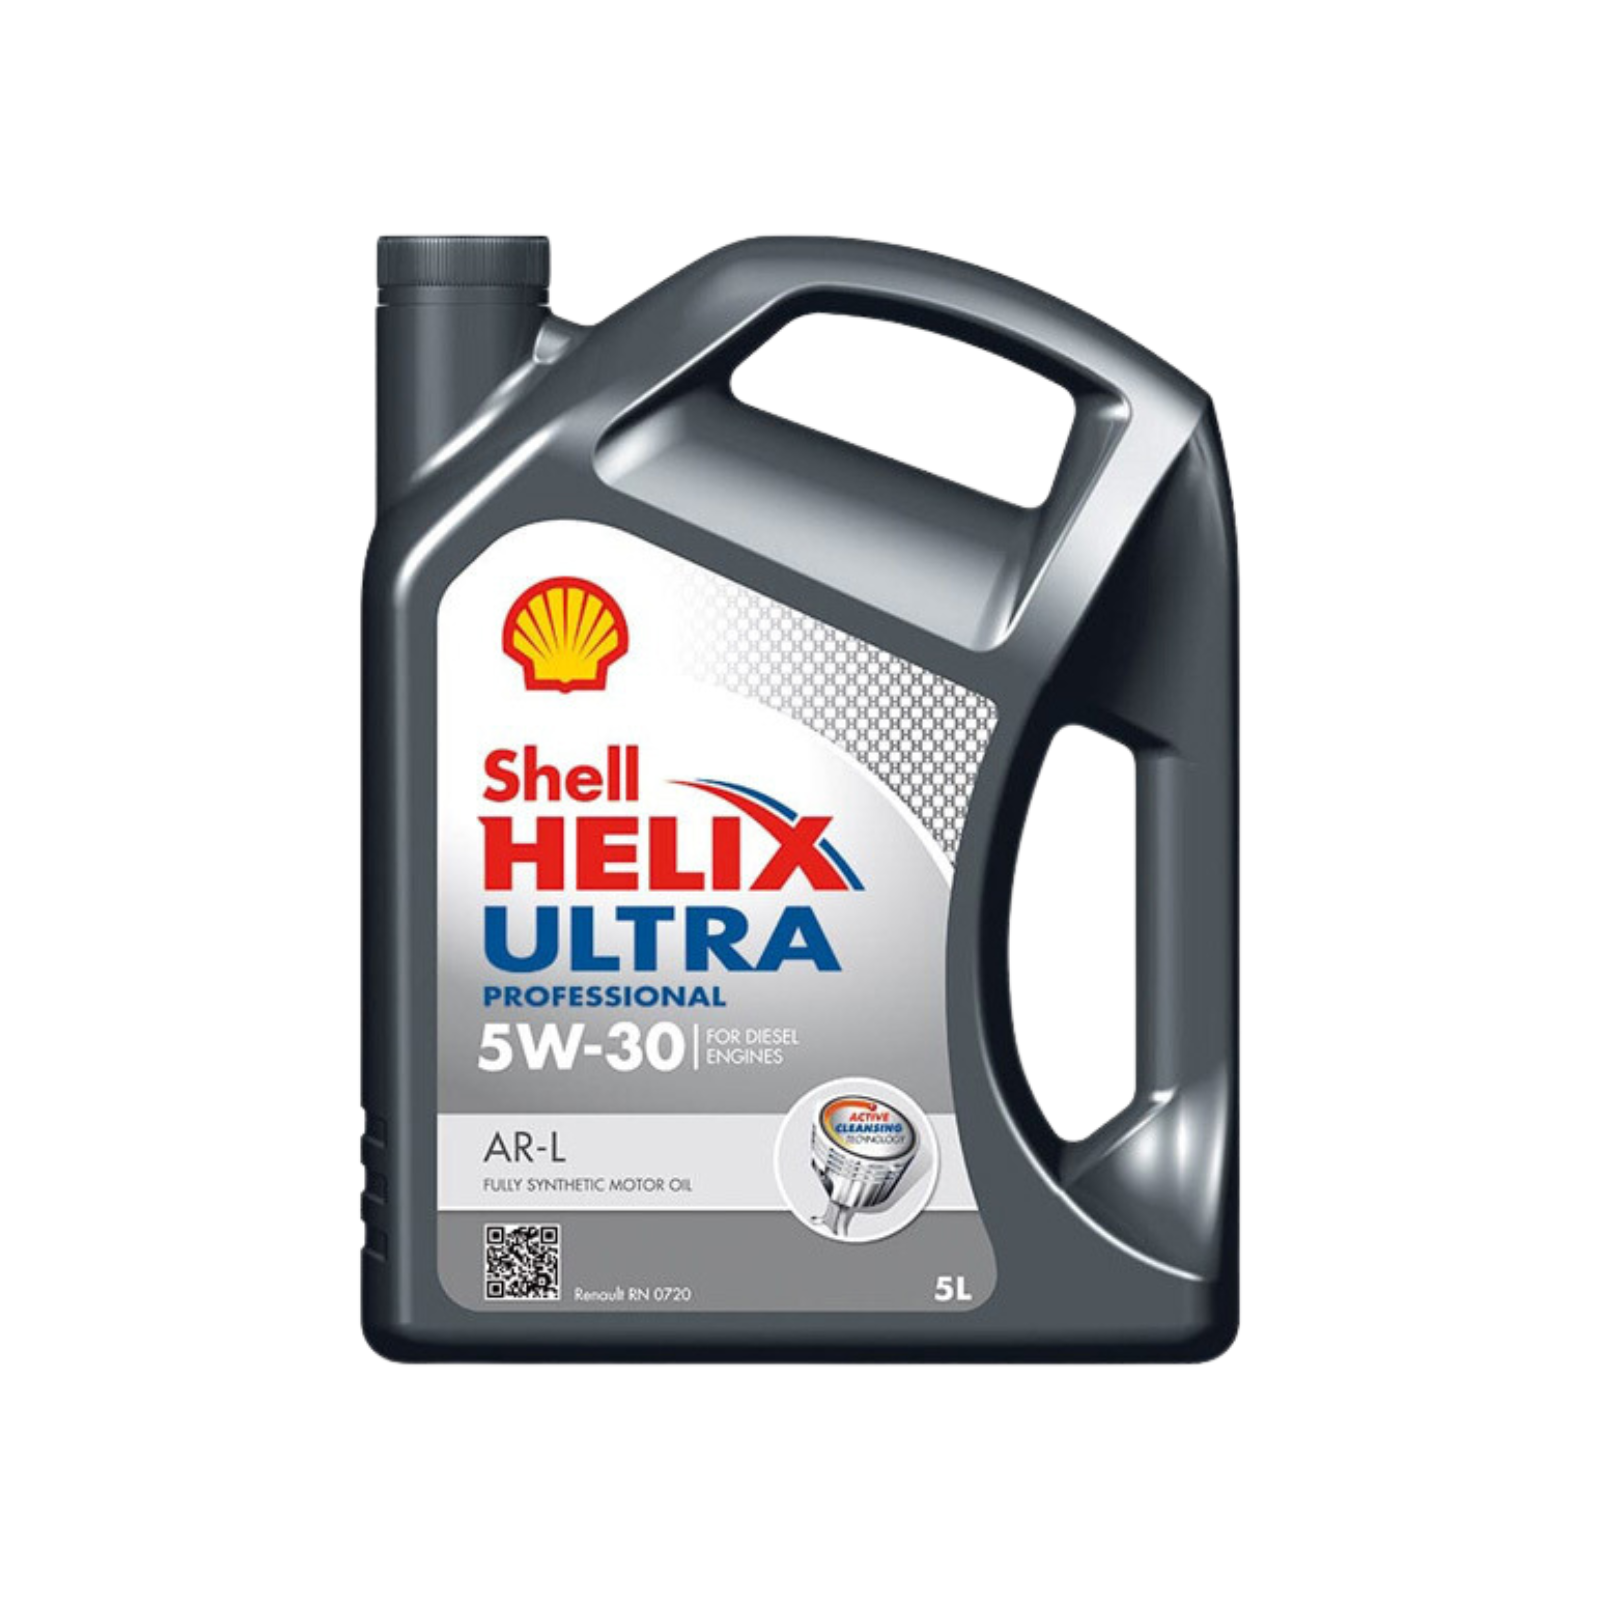 Shell Helix Ultra Professional AR-L 5W-30 5L Engine Oil